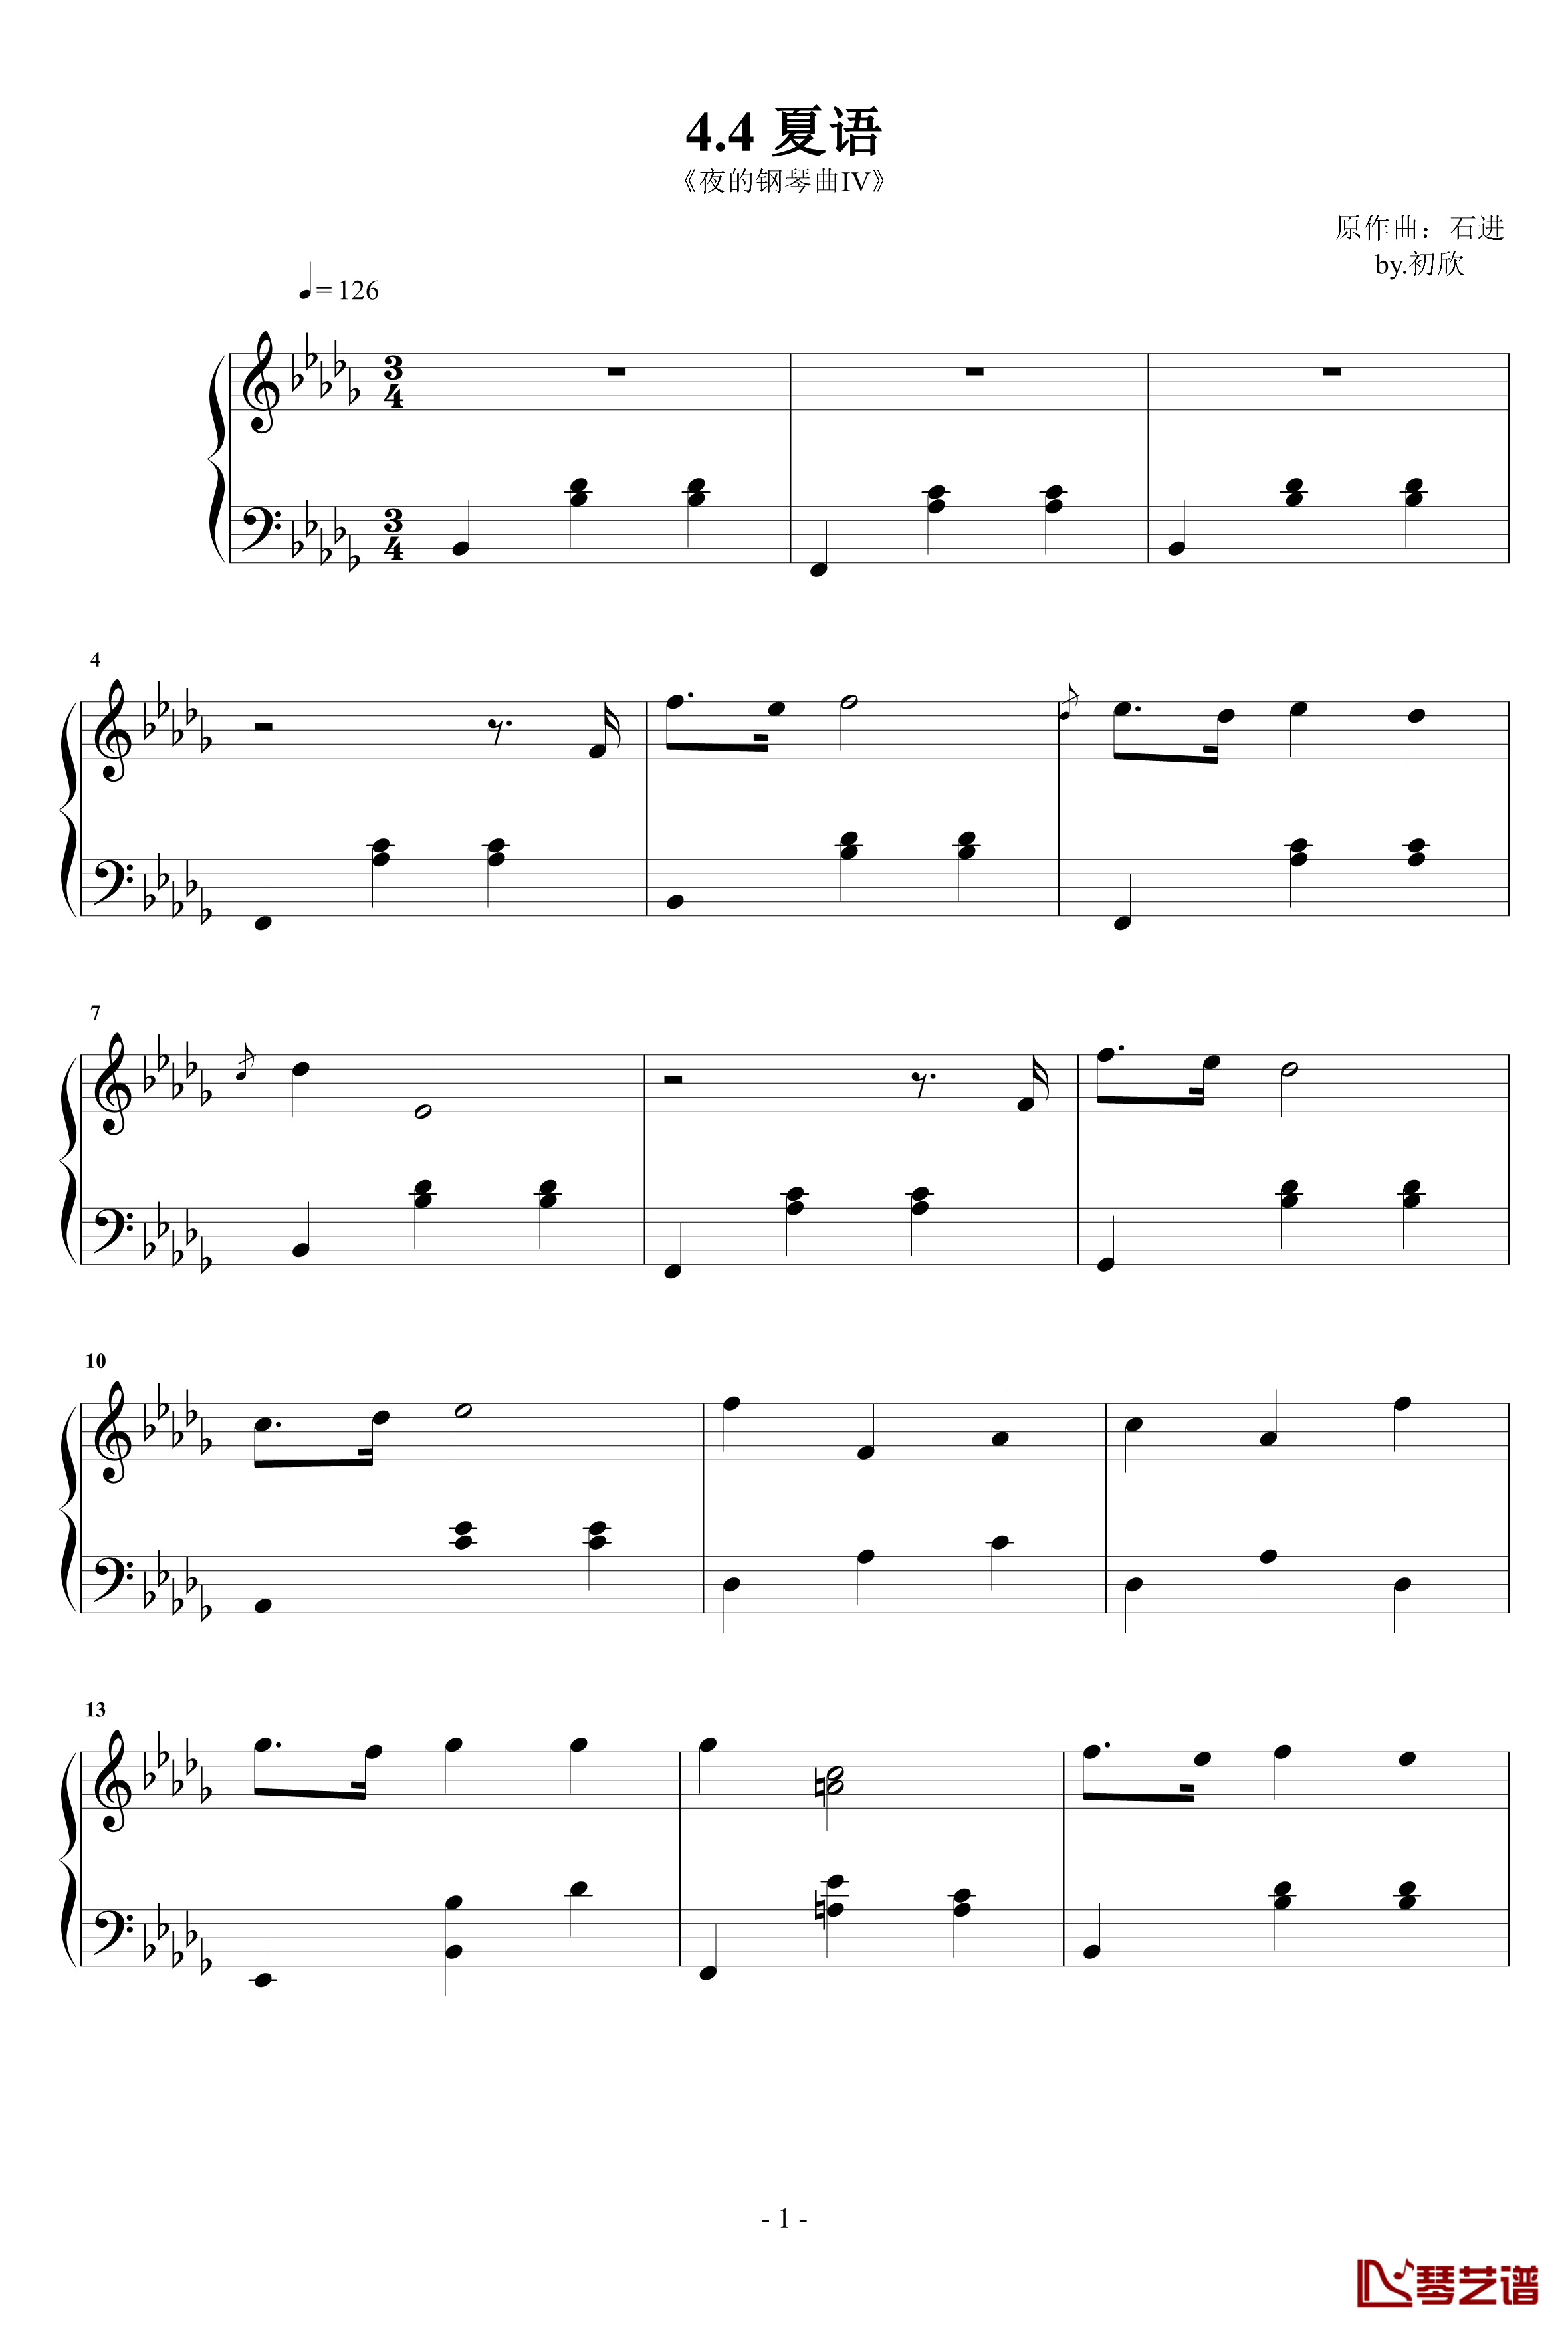 夏语钢琴谱-夜的钢琴曲IV-石进1